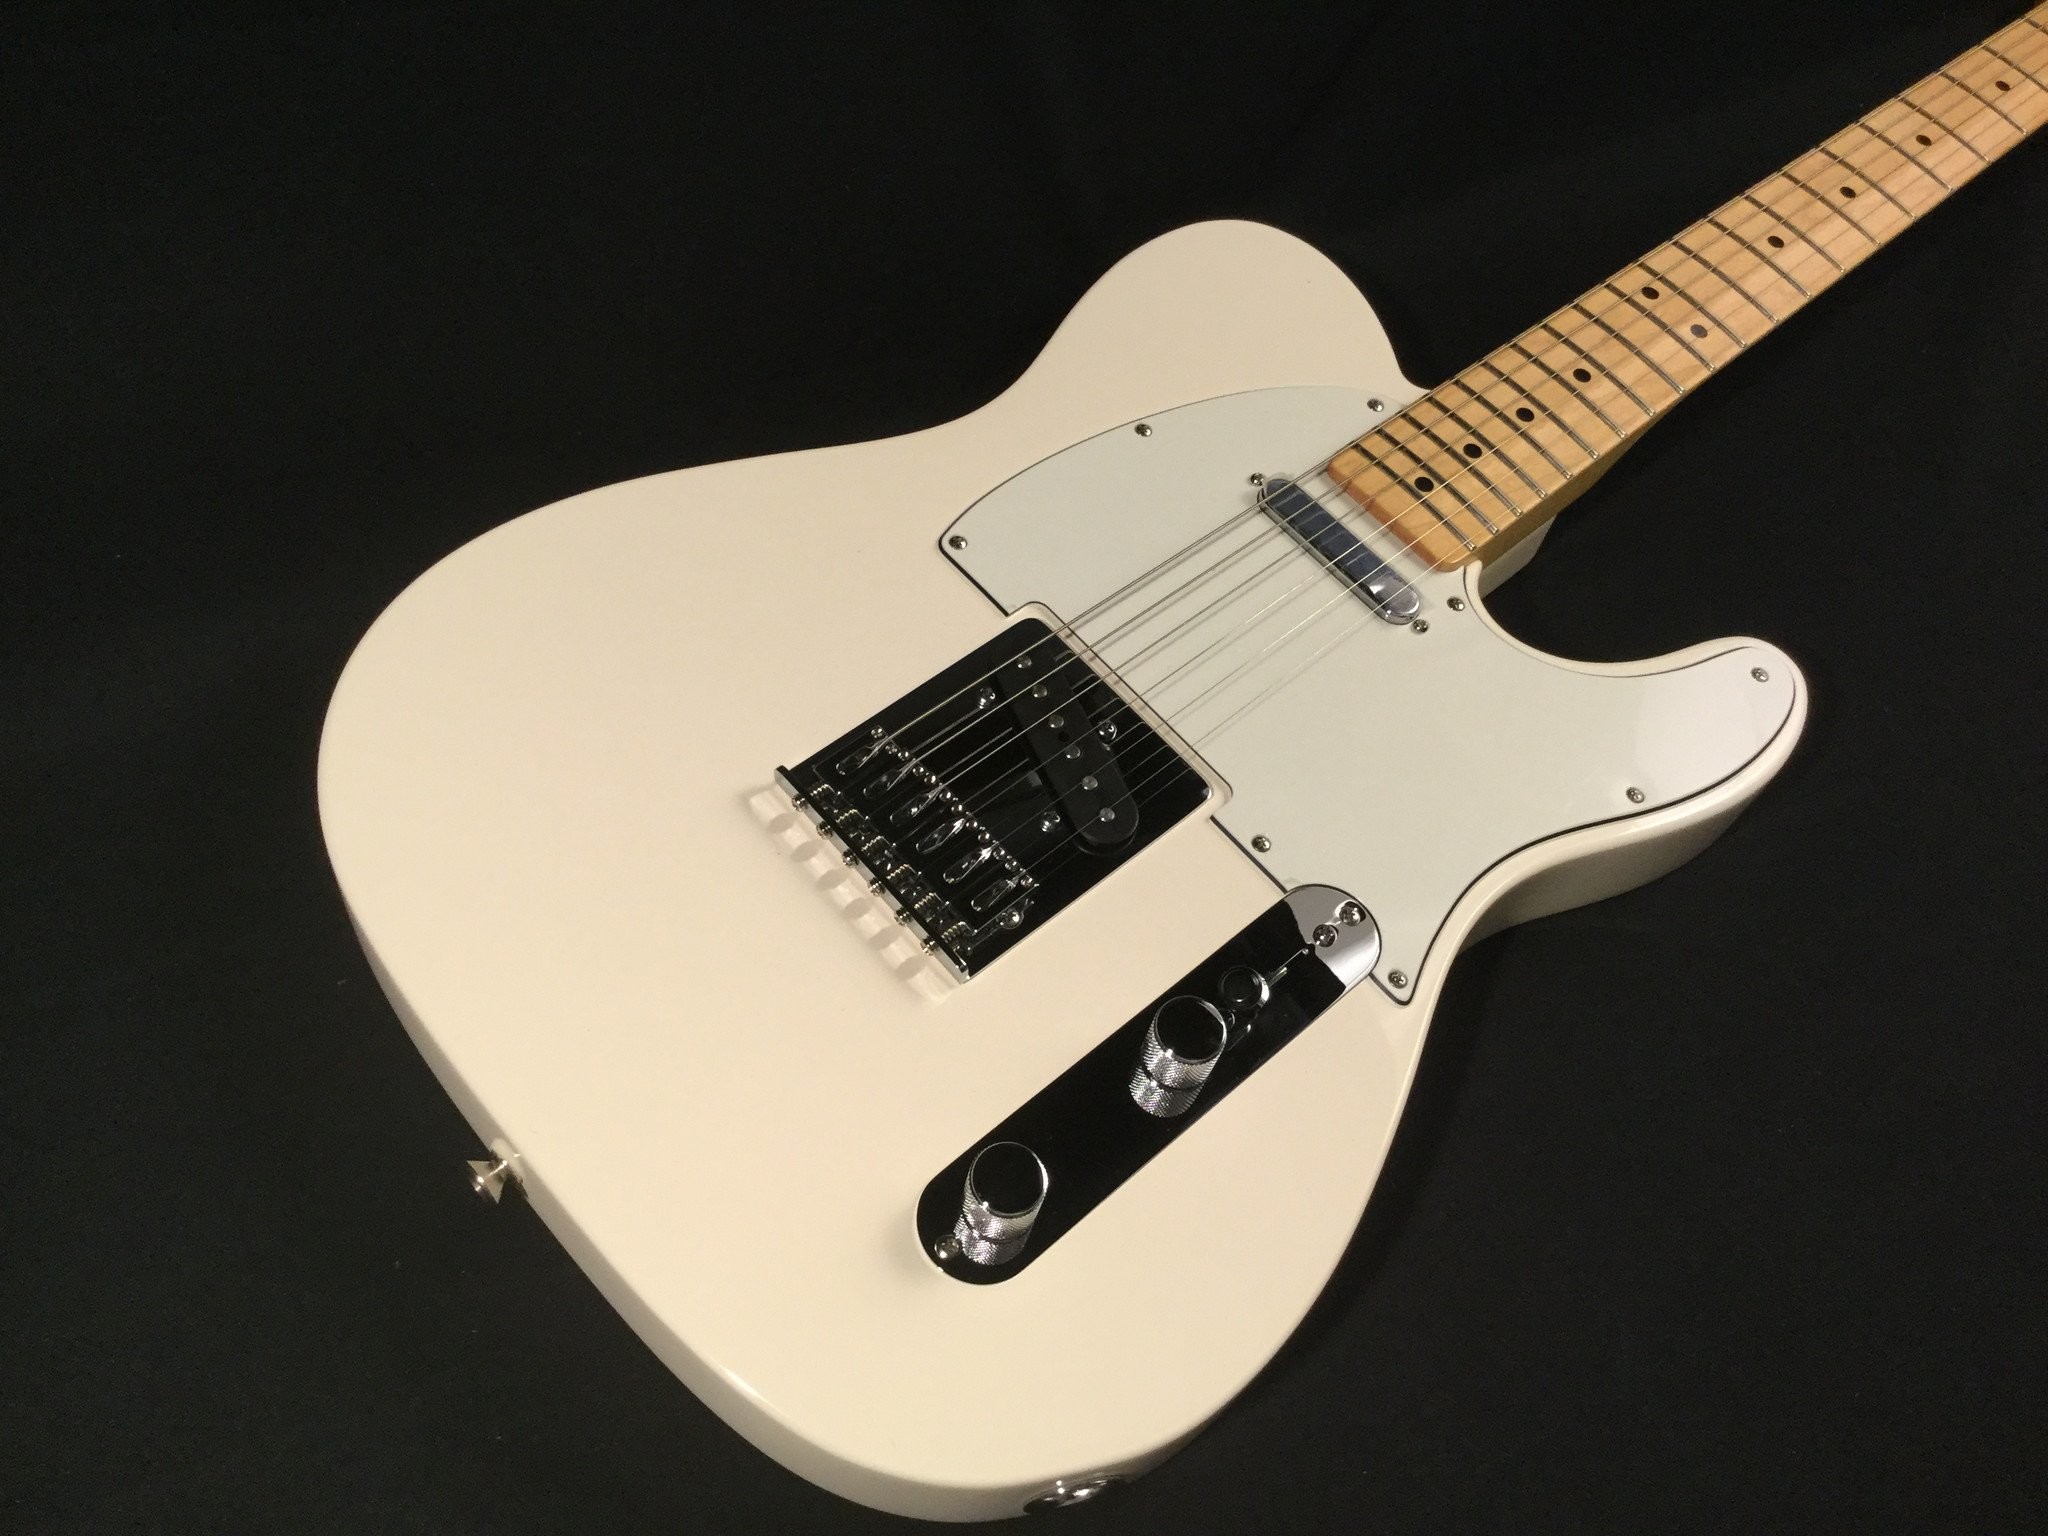 2048x1536 Fender Standard Telecaster - Arctic White, Maple fingerboard